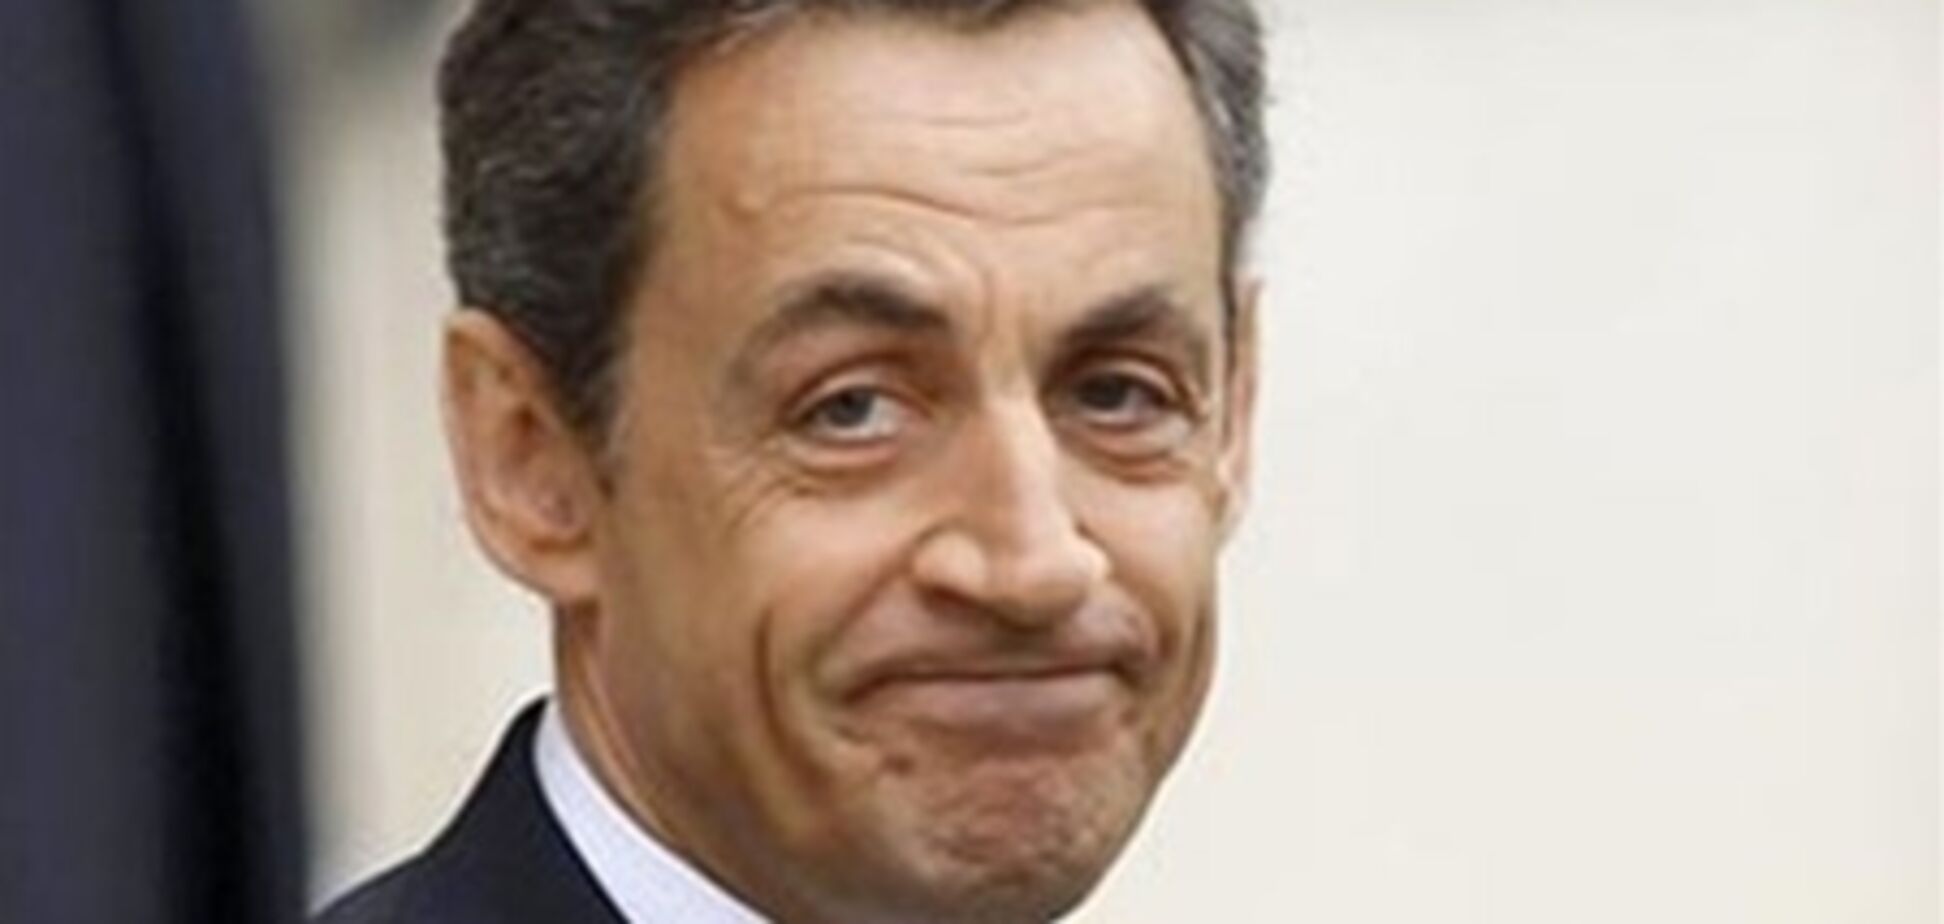 ЗМІ: кримінальну справу проти Саркозі можуть закрити